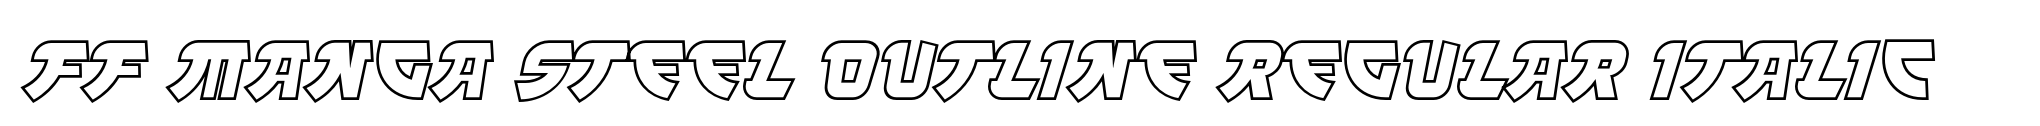 FF Manga Steel Outline Regular Italic image